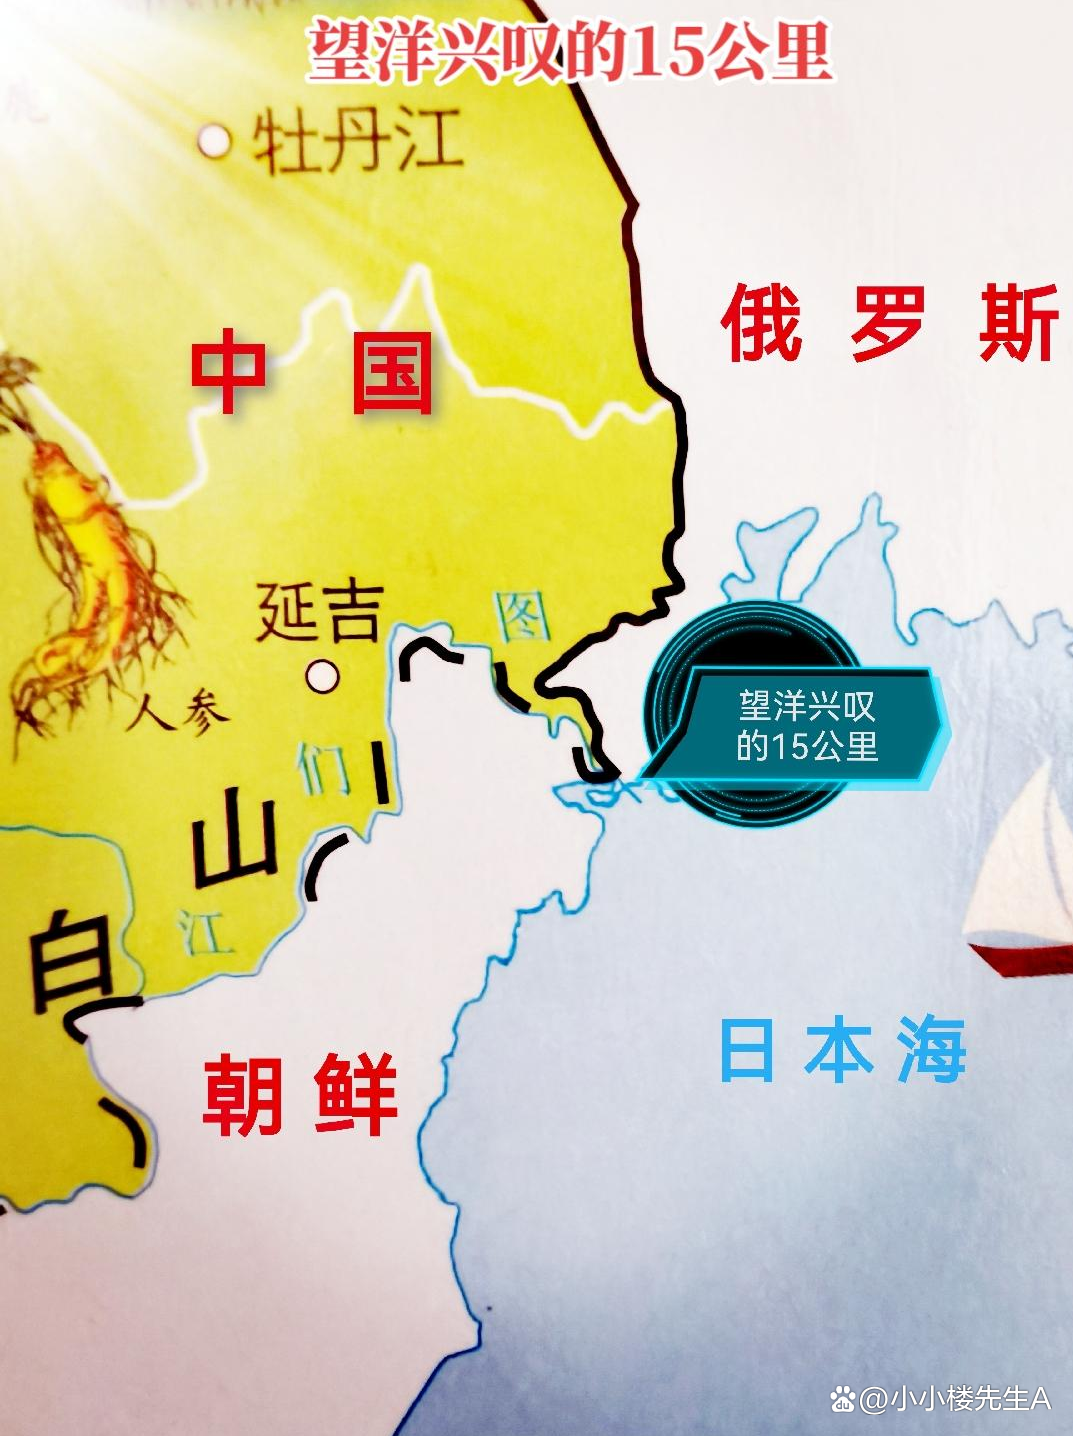 中国日本海出海口谈判图片